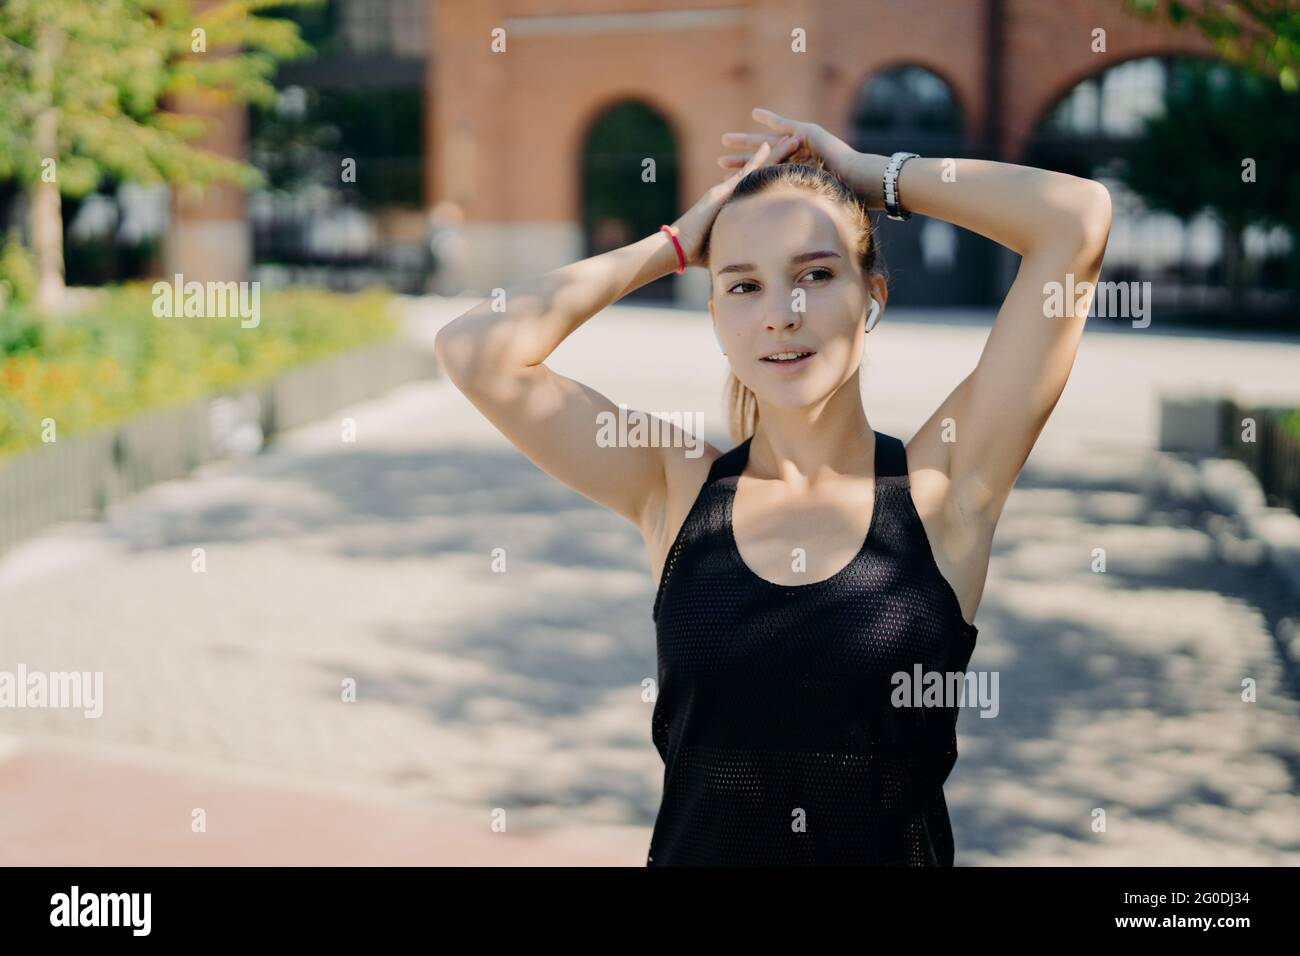 Die sportliche Frau, die sich in die Ferne konzentriert, atmet nach dem Joggen während des Cardio-Trainings tief ein, gekleidet in schwarzes T-Shirt hält die Hände am Kopf Stockfoto